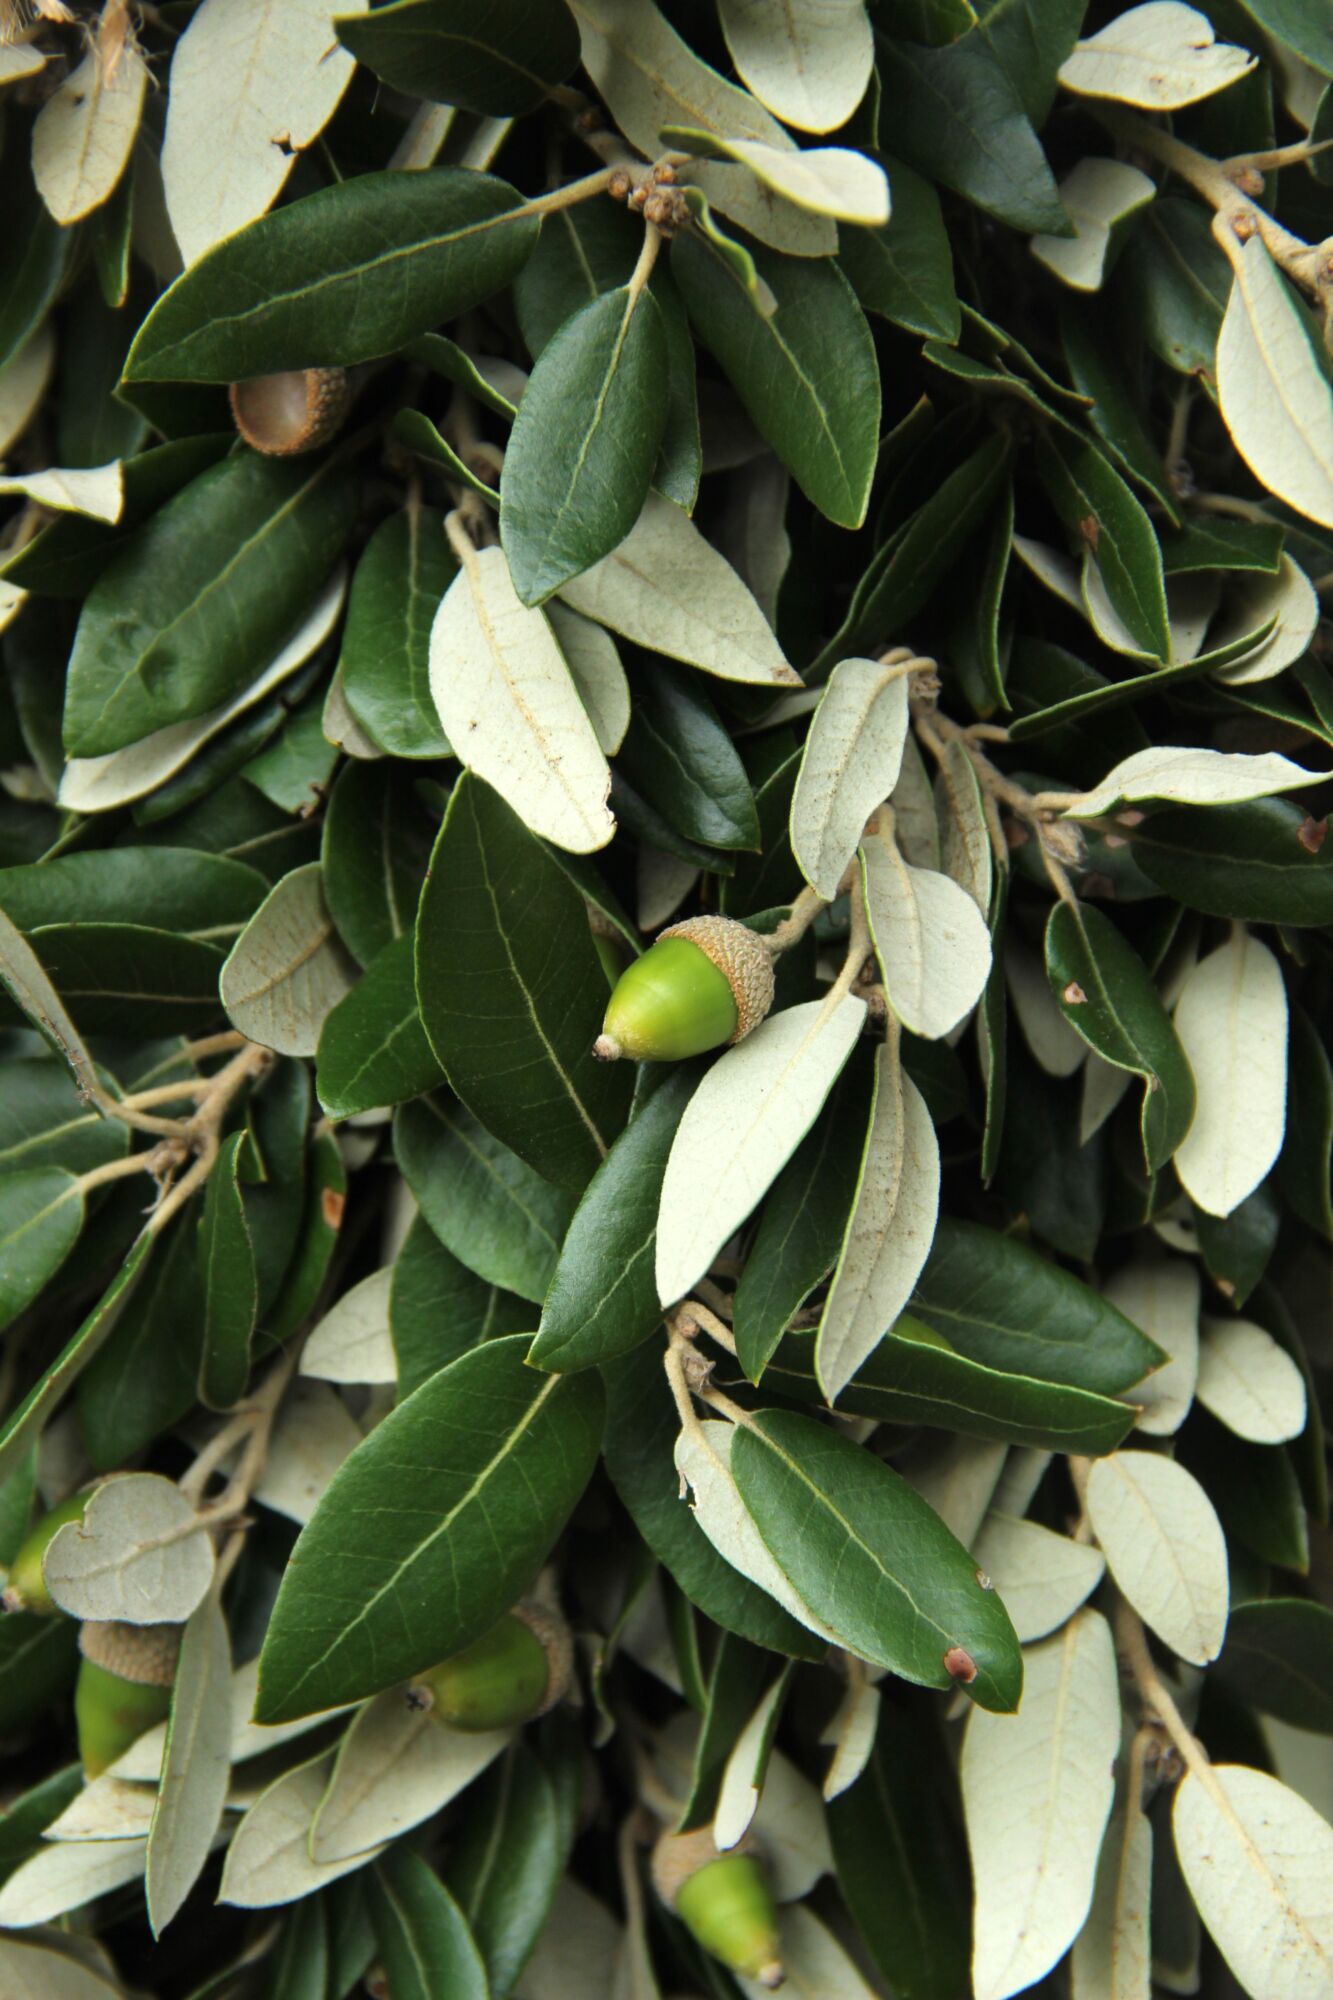 Diepgroen blad met een mooie zilvergroene achterzijde en leuke groene eikeltjes